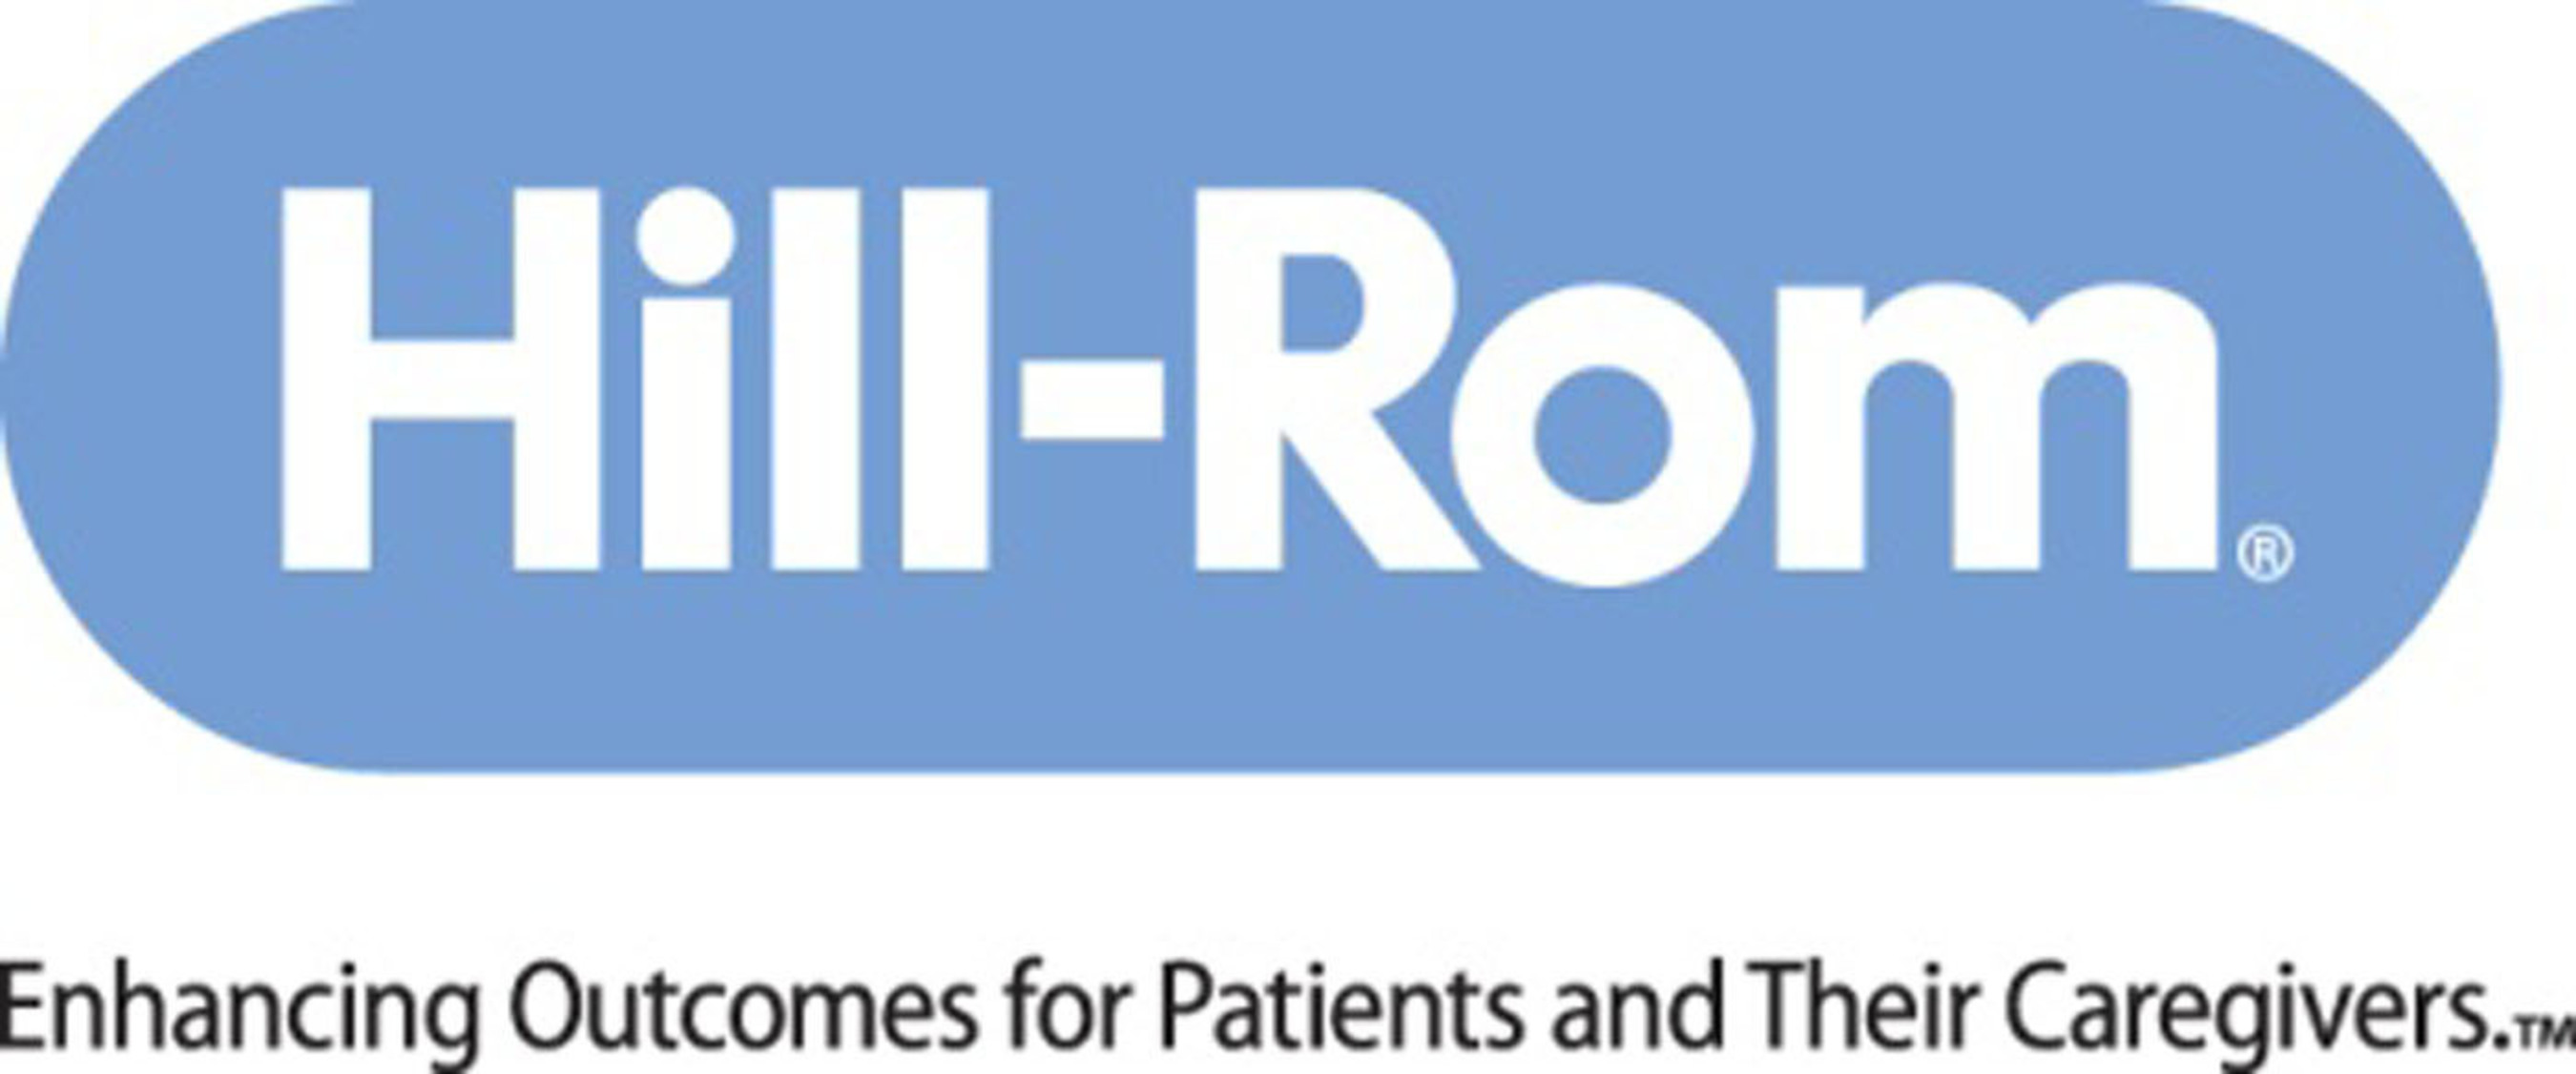 Hill-Rom Logo. (PRNewsFoto/Hill-Rom Holdings, Inc.) (PRNewsFoto/) (PRNewsFoto/Hill-Rom Holdings, Inc.)